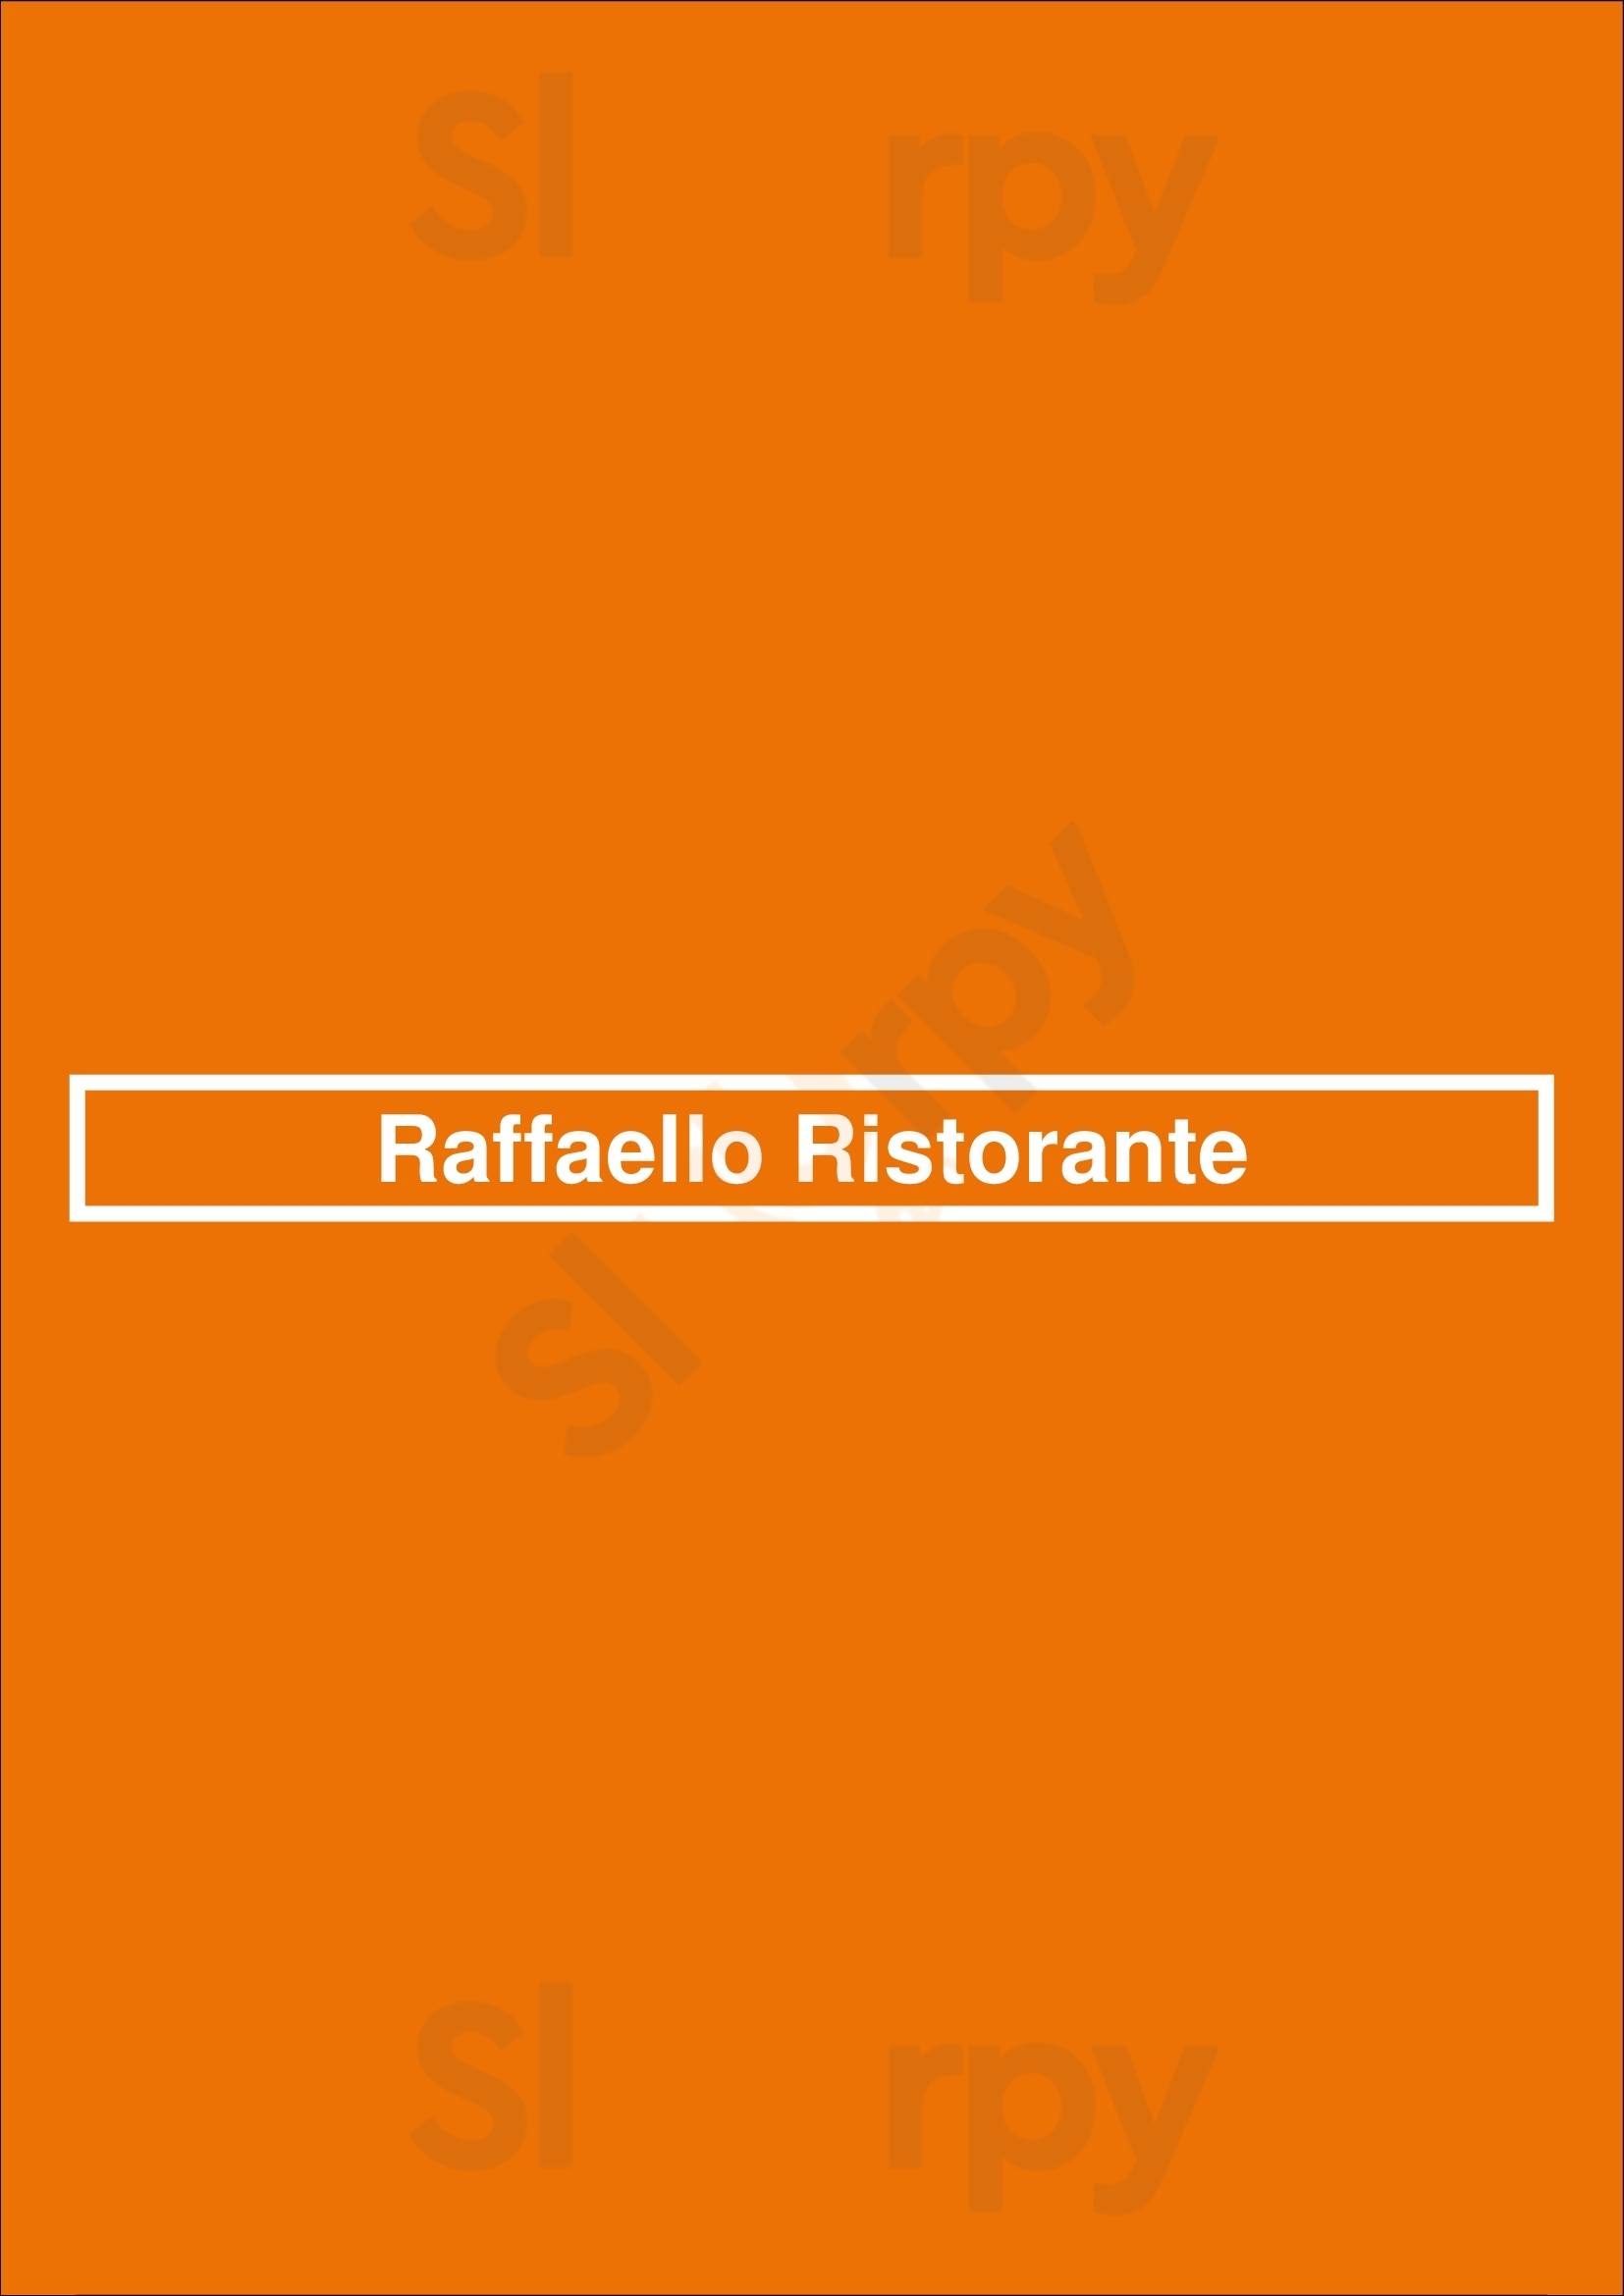 Raffaello Ristorante Los Angeles Menu - 1